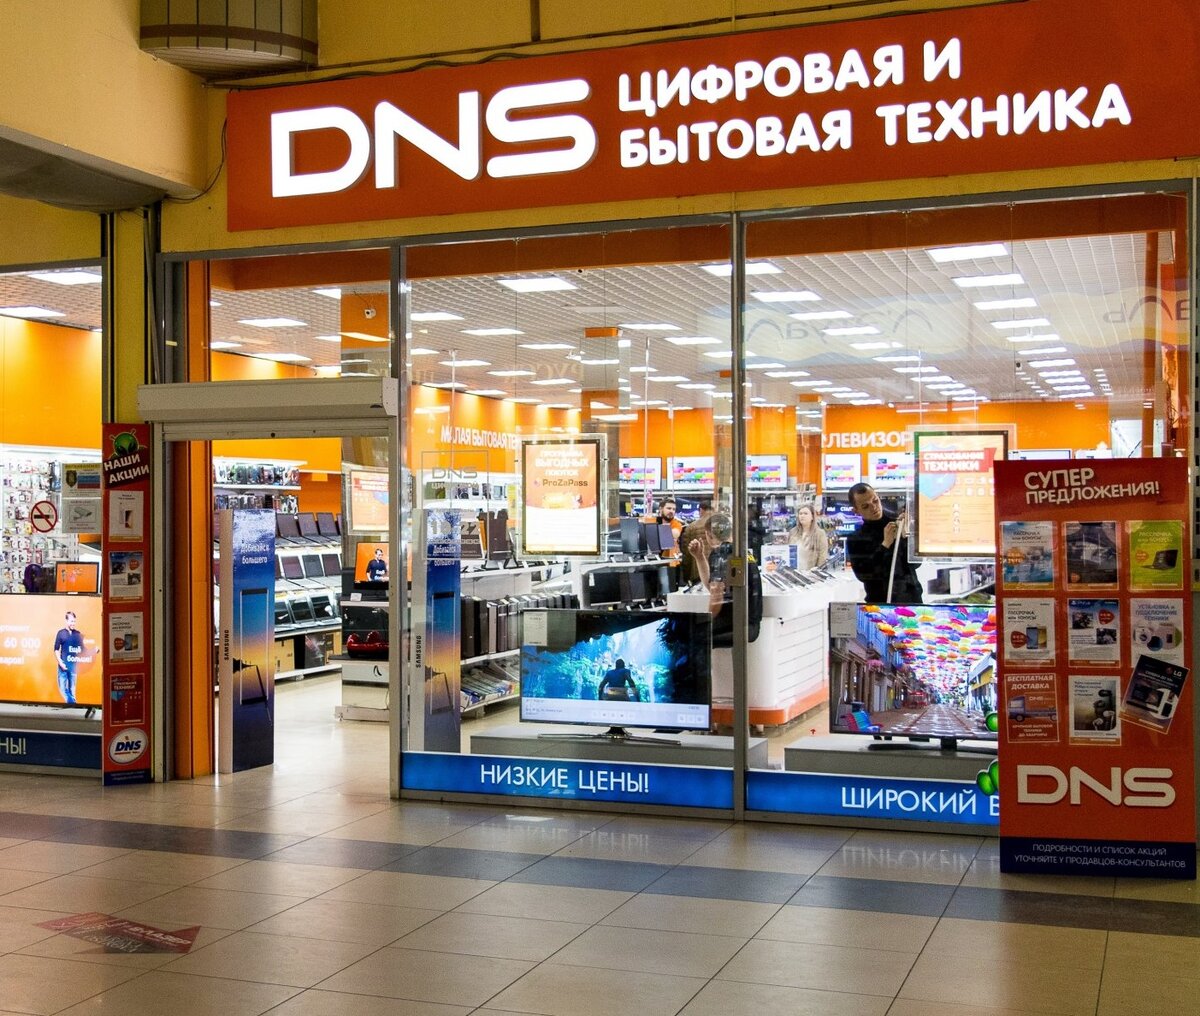 Сайт днс ангарск. ДНС. DNS цифровая и бытовая техника. Магазин ДНС. ДНС Ритейл.